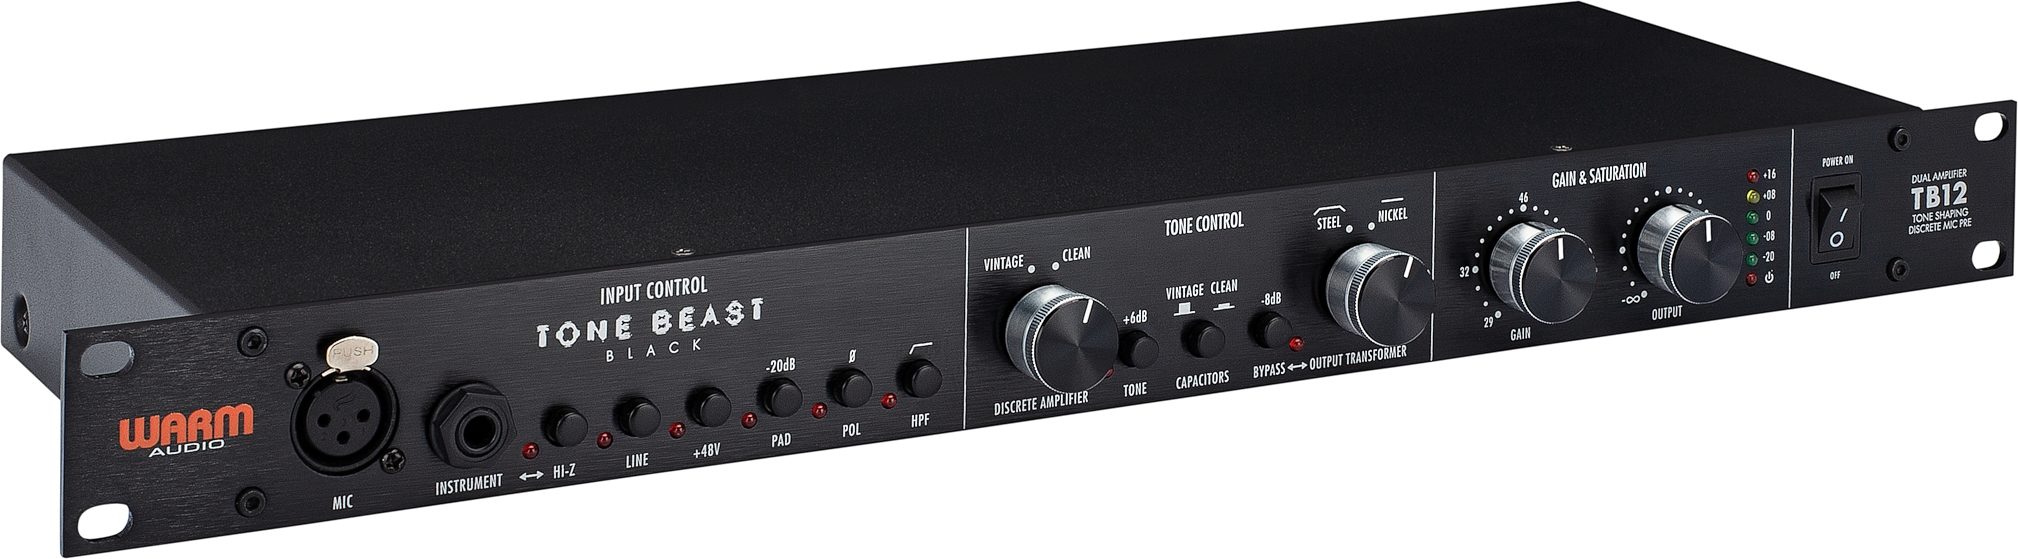 12 tone. Tb12 "Tone Beast" Black. Warm Audio tb12 Black. Warm Audio. Warm Audio tb12.